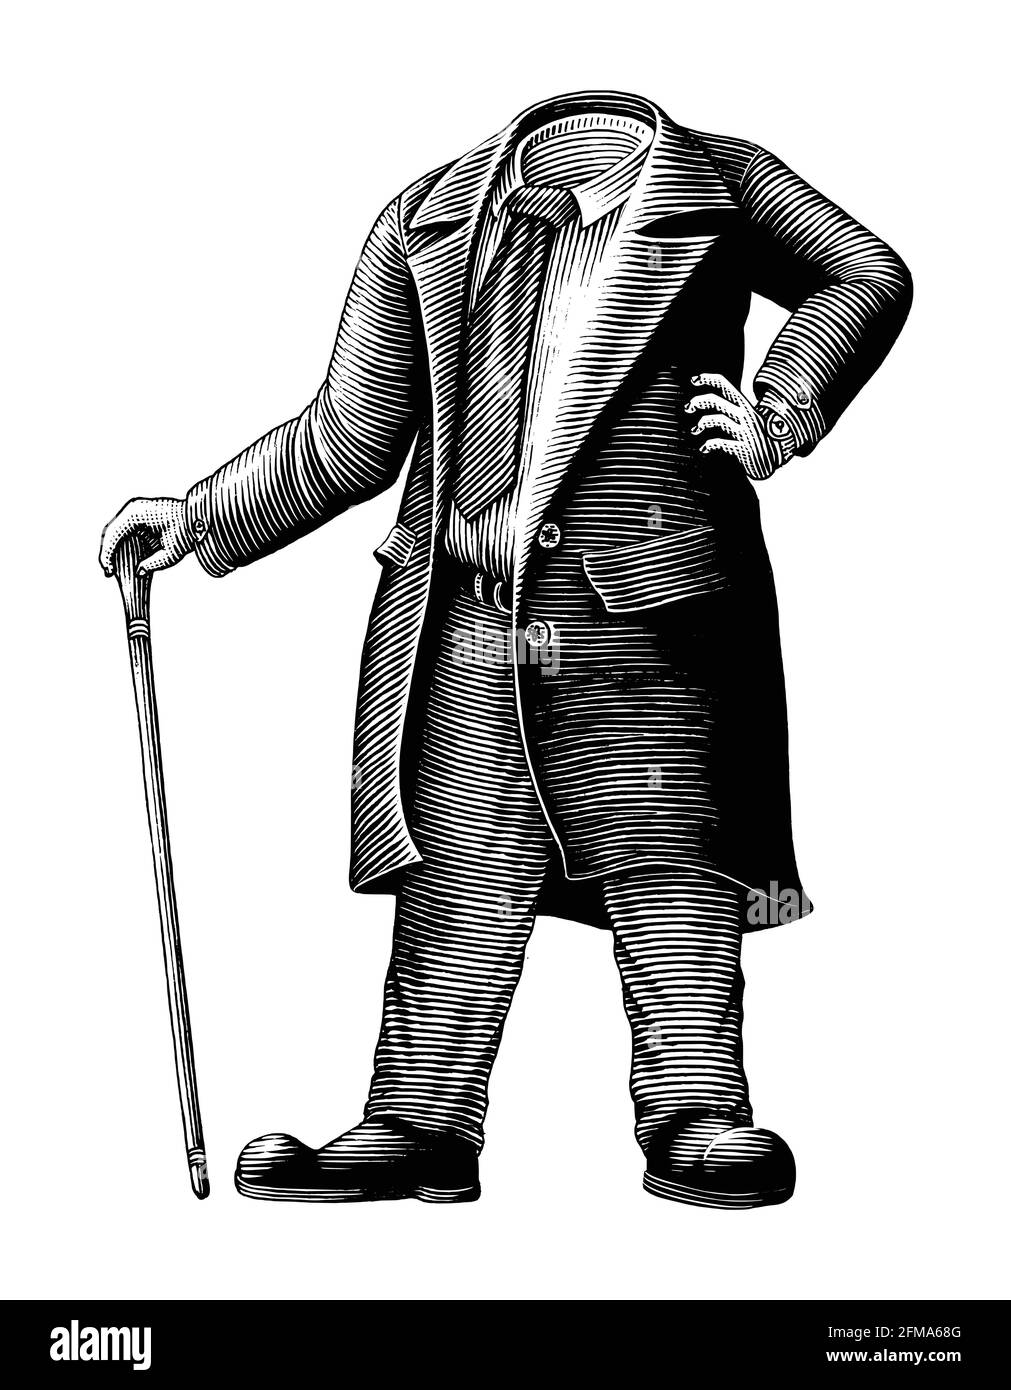 Les hommes dans un costume sans tête dessin main style de gravure vintage clip art noir et blanc isolé sur arrière-plan blanc Illustration de Vecteur